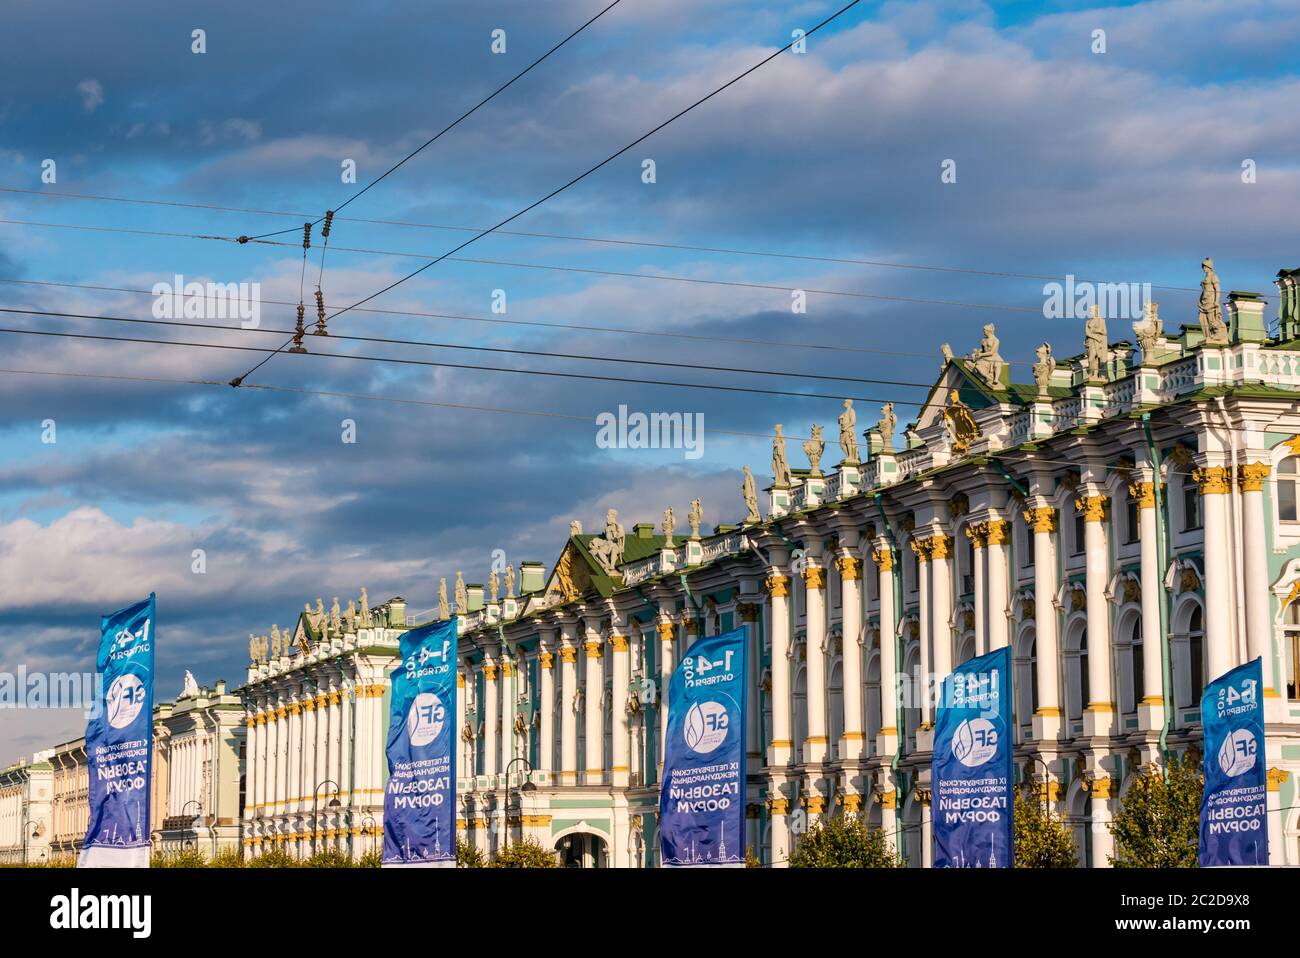 Palazzo invernale con banner per 2019 gas Forum evento internazionale conferenza, l'Hermitage, San Pietroburgo, Russia Foto Stock